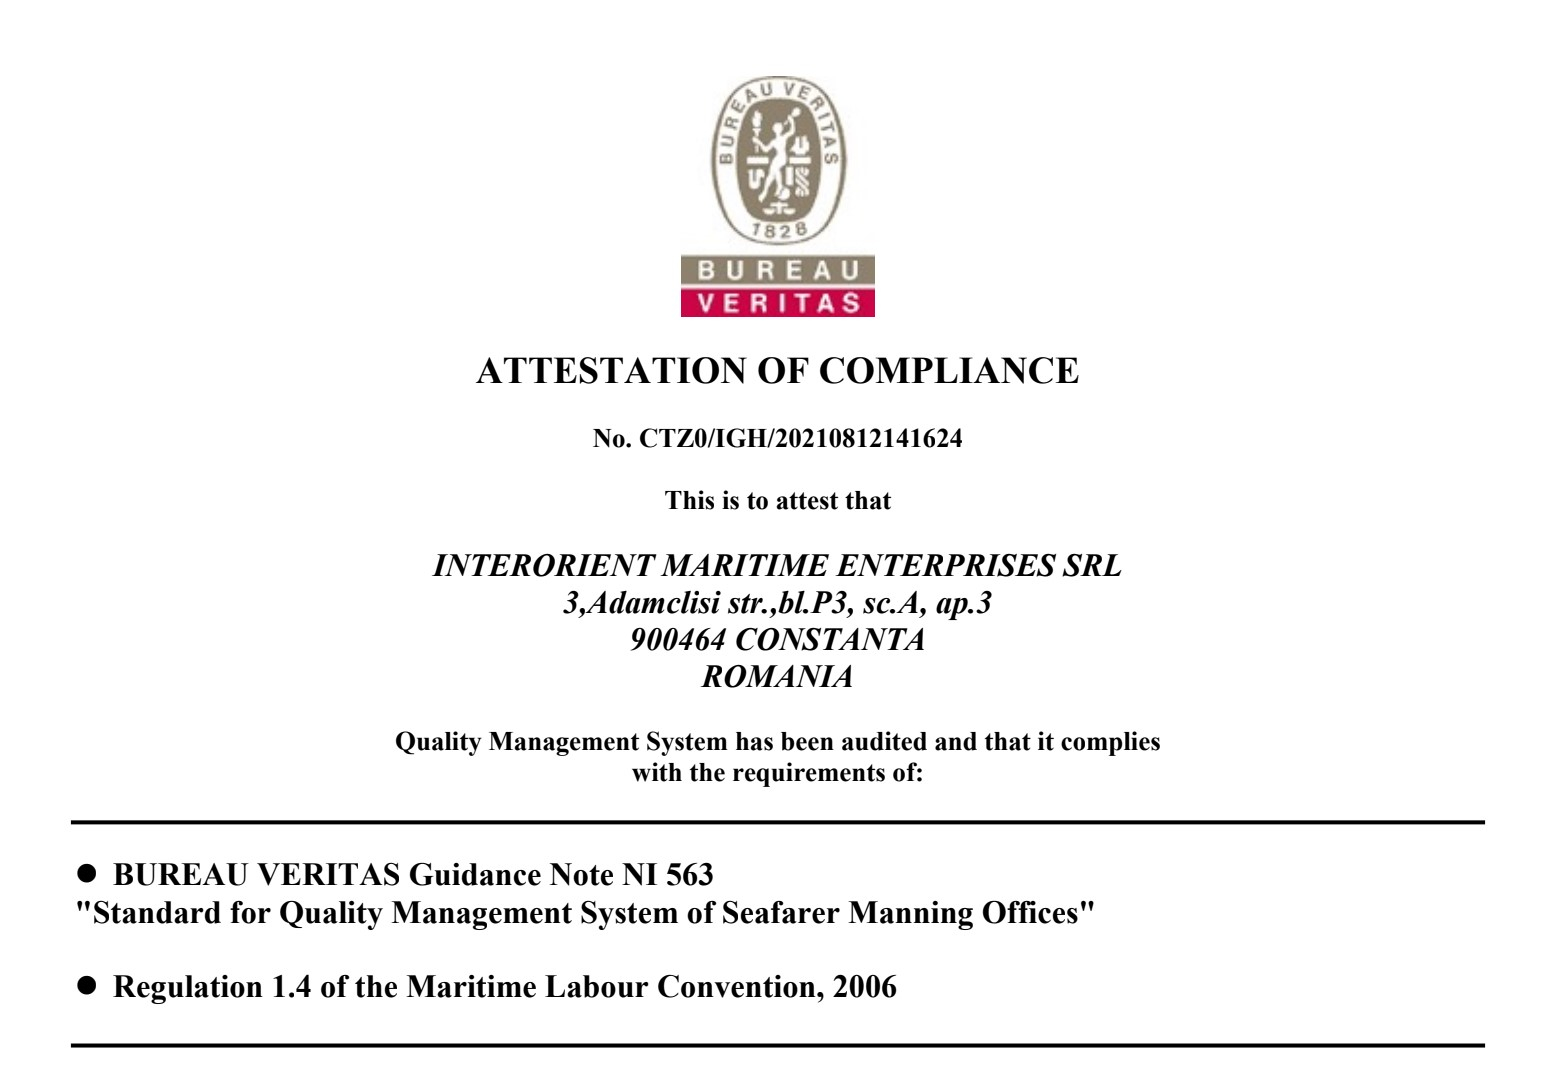 MLC Compliance INTERORIENT MARITIME ENTERPRISES SRL